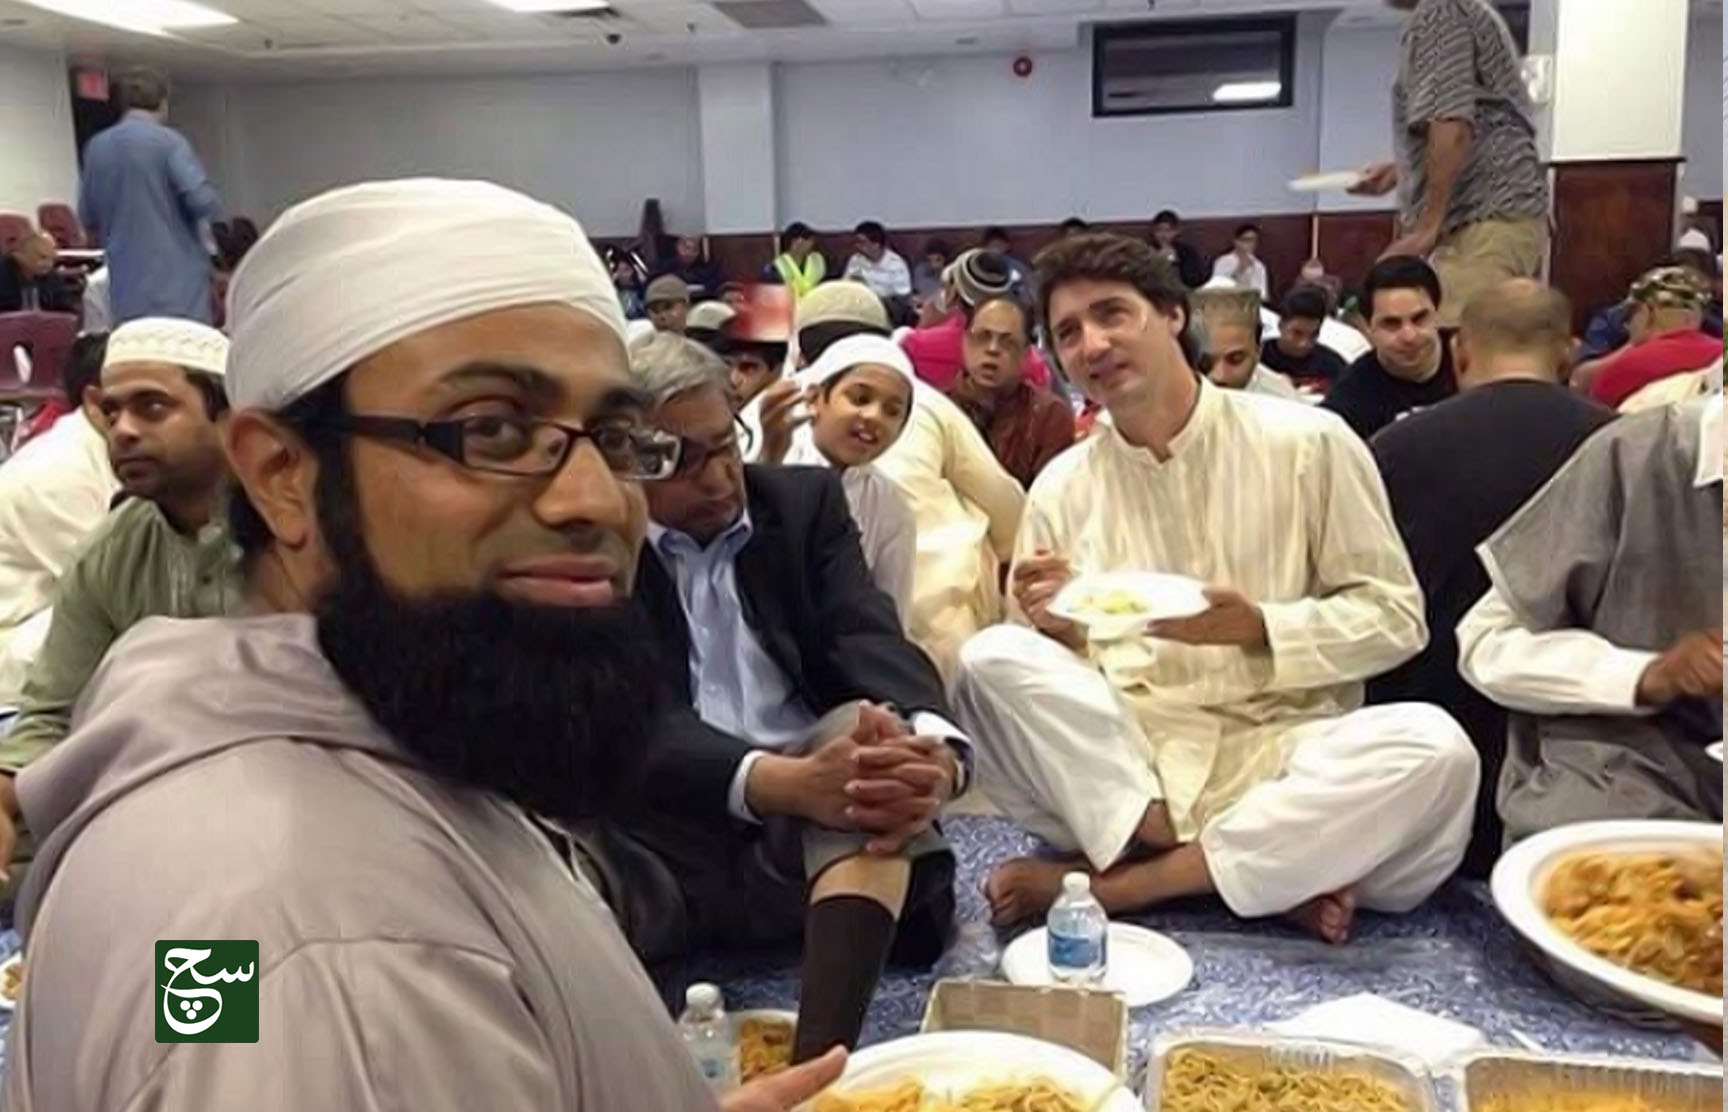 كندا تعالج مناخ الخوف من الإسلام بقانون ضد الإسلاموفوبيا!